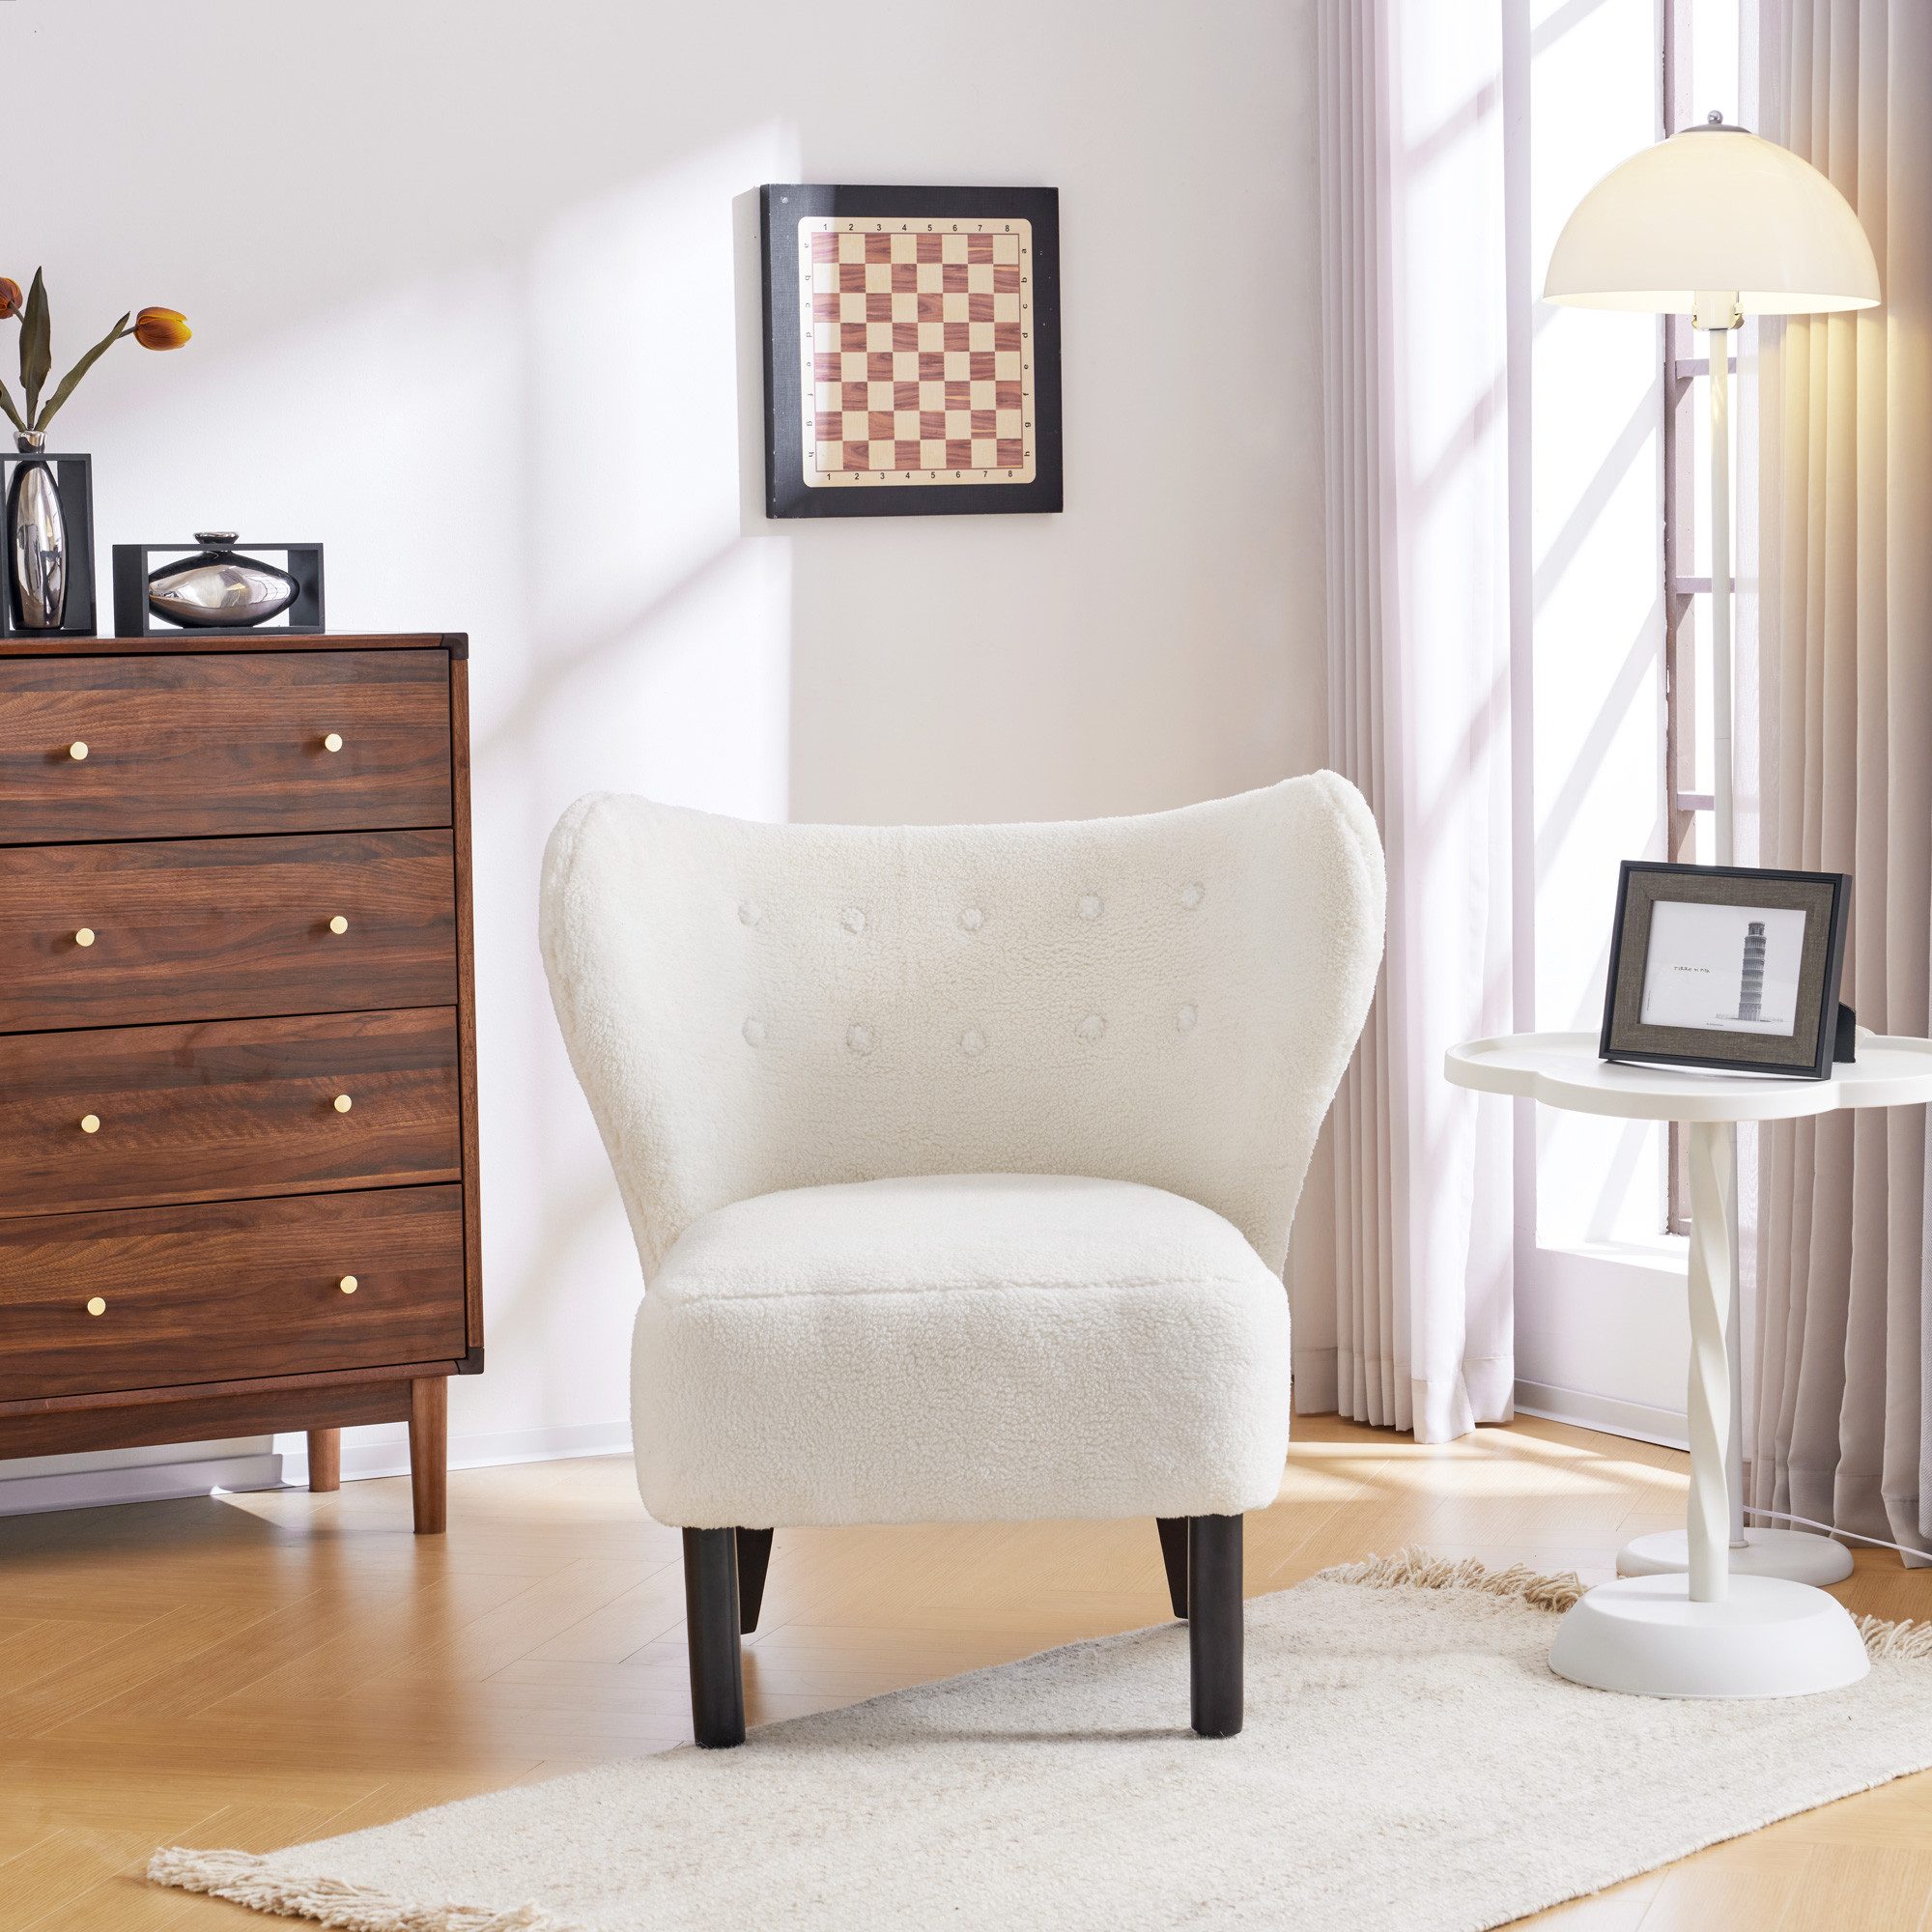 IDEASY Gartenstuhl Loungesessel, Lammwolle, extragroße Sitzbreite 58 cm, Sitztiefe, 56,5 cm, gefüllt mit hochelastischem Schaumstoff, weiß/braun